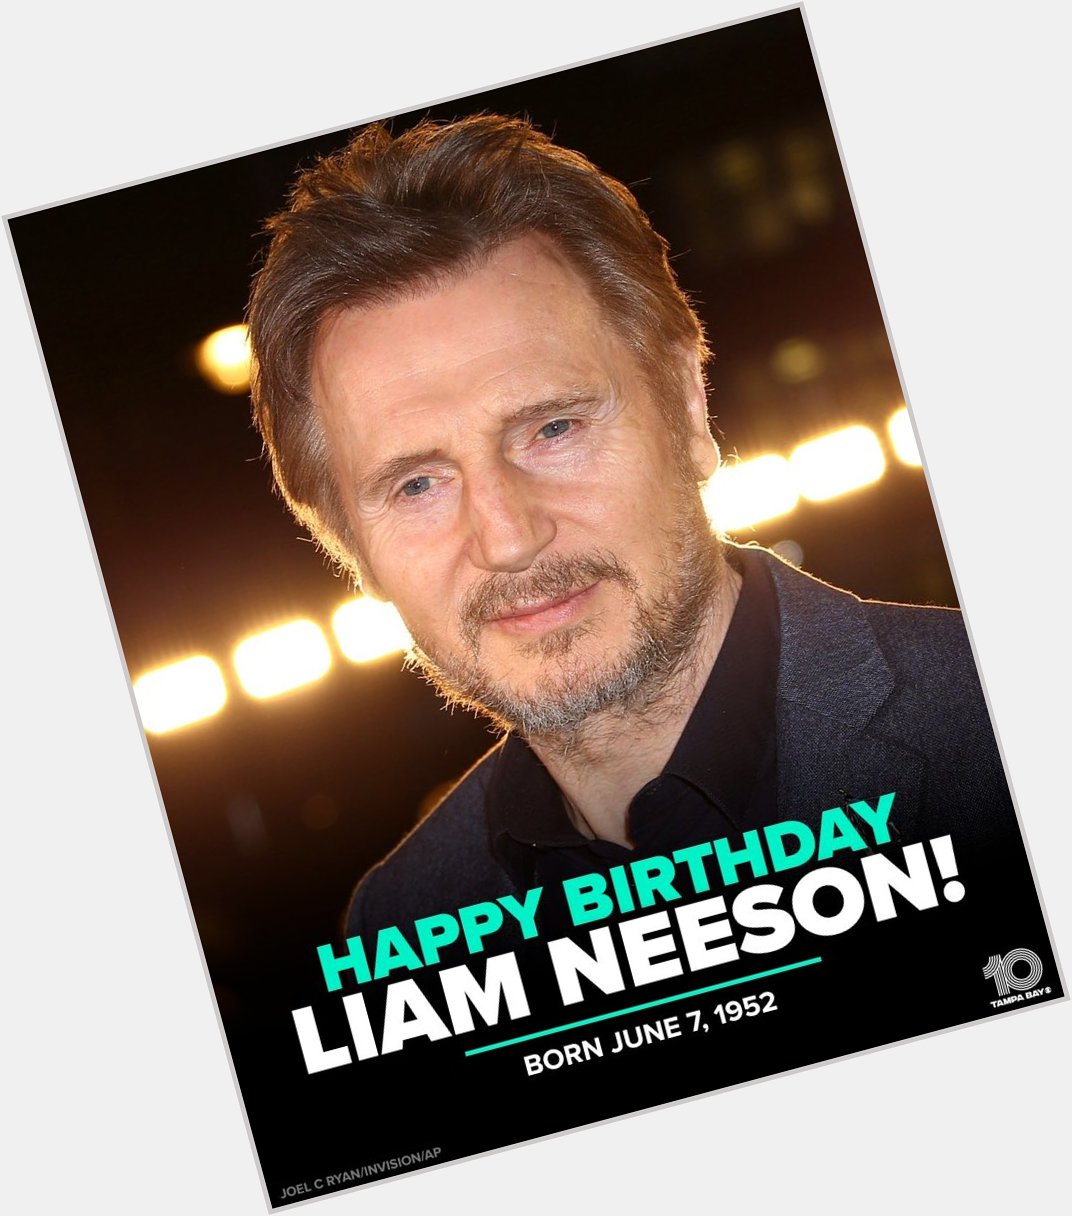 Happy birthday to Liam Neeson       